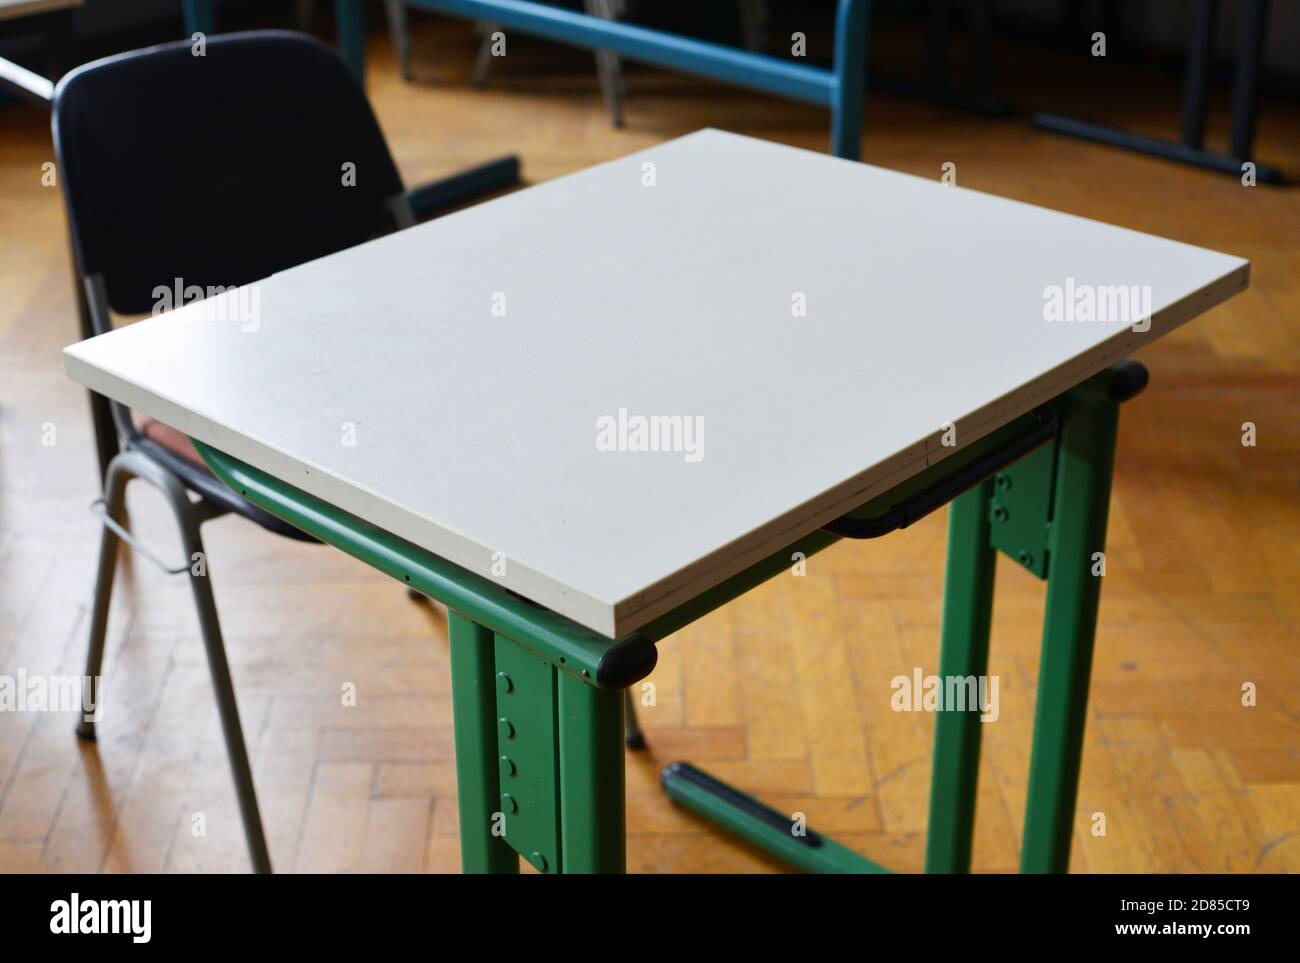 Espacio de trabajo único en un concepto de aula, mesa y silla Foto de stock